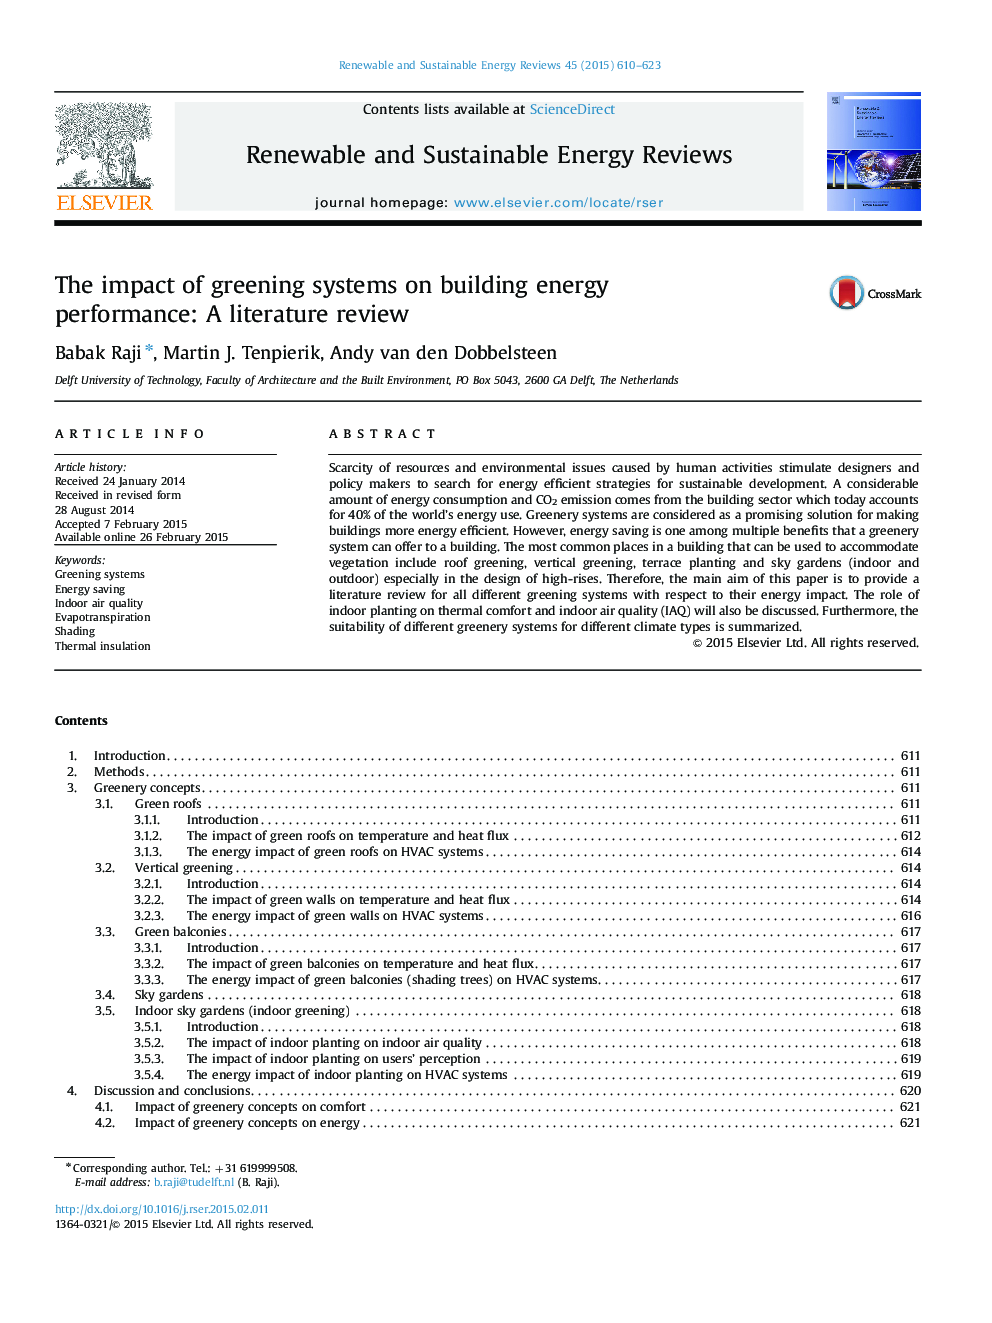 تأثیر سیستم های سبز سازی بر عملکرد انرژی ساختمان: بررسی ادبیات 